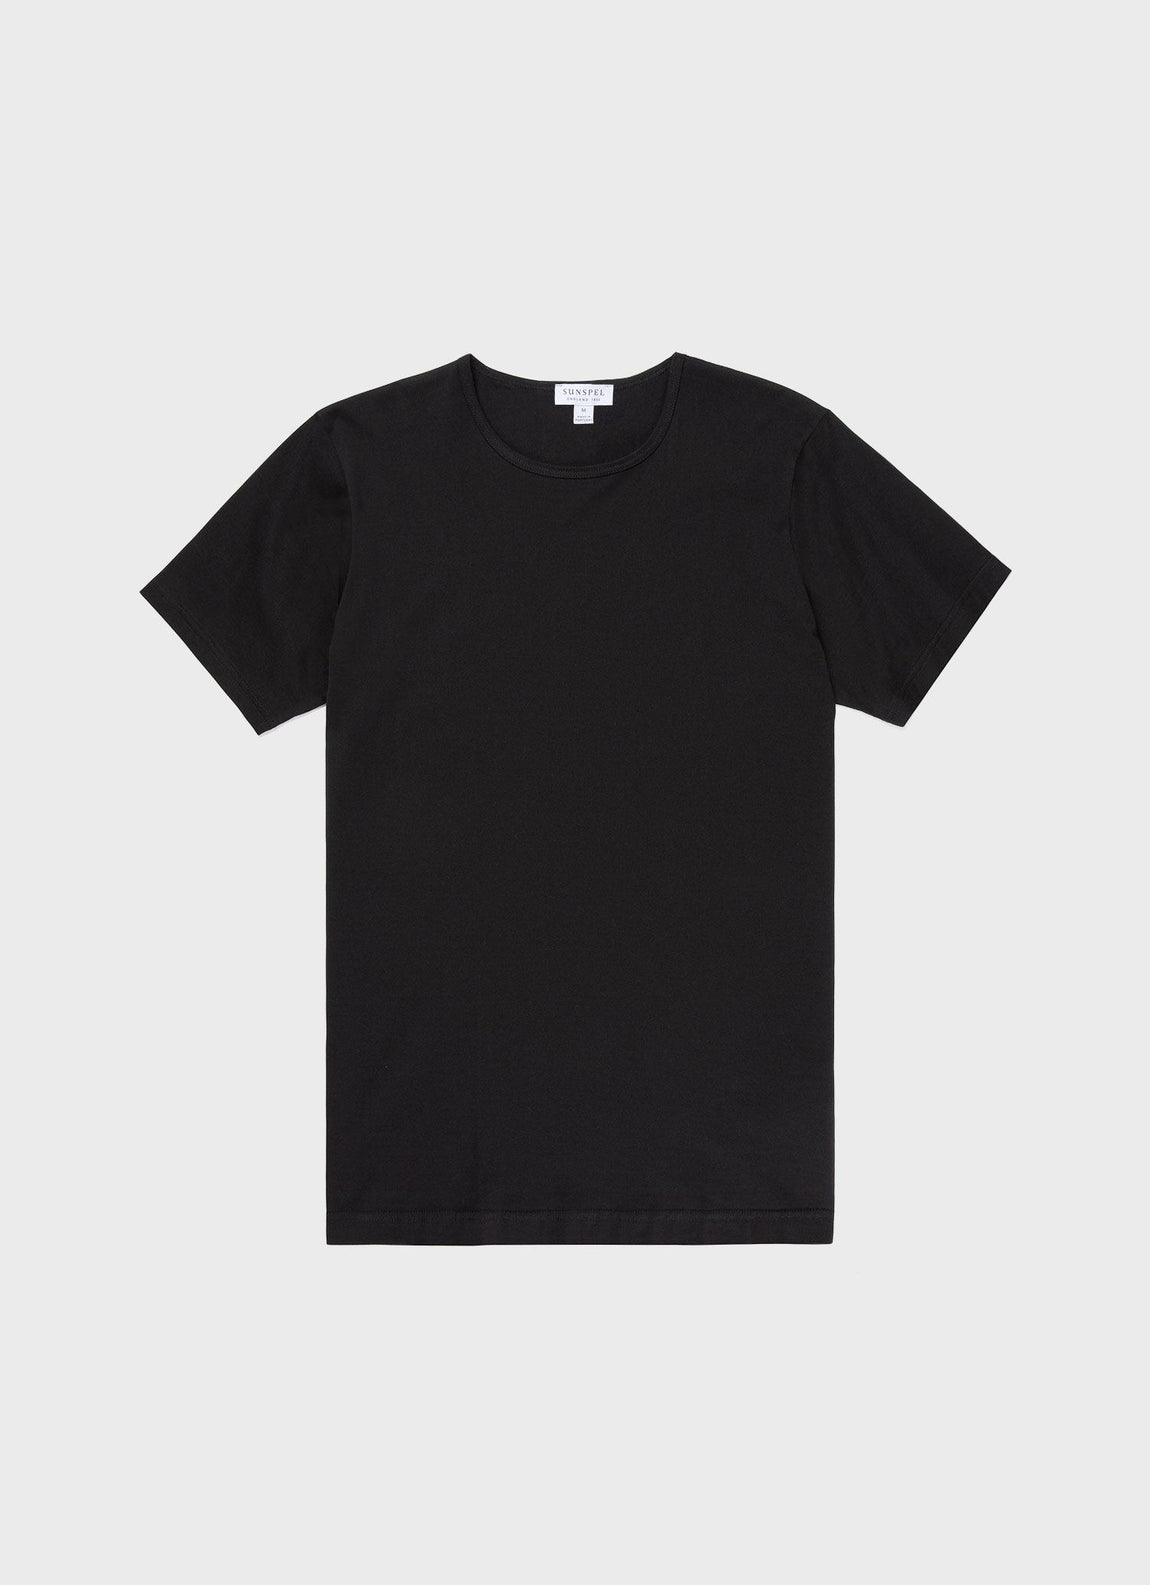 Men's Superfine Cotton Underwear T-shirt in Black